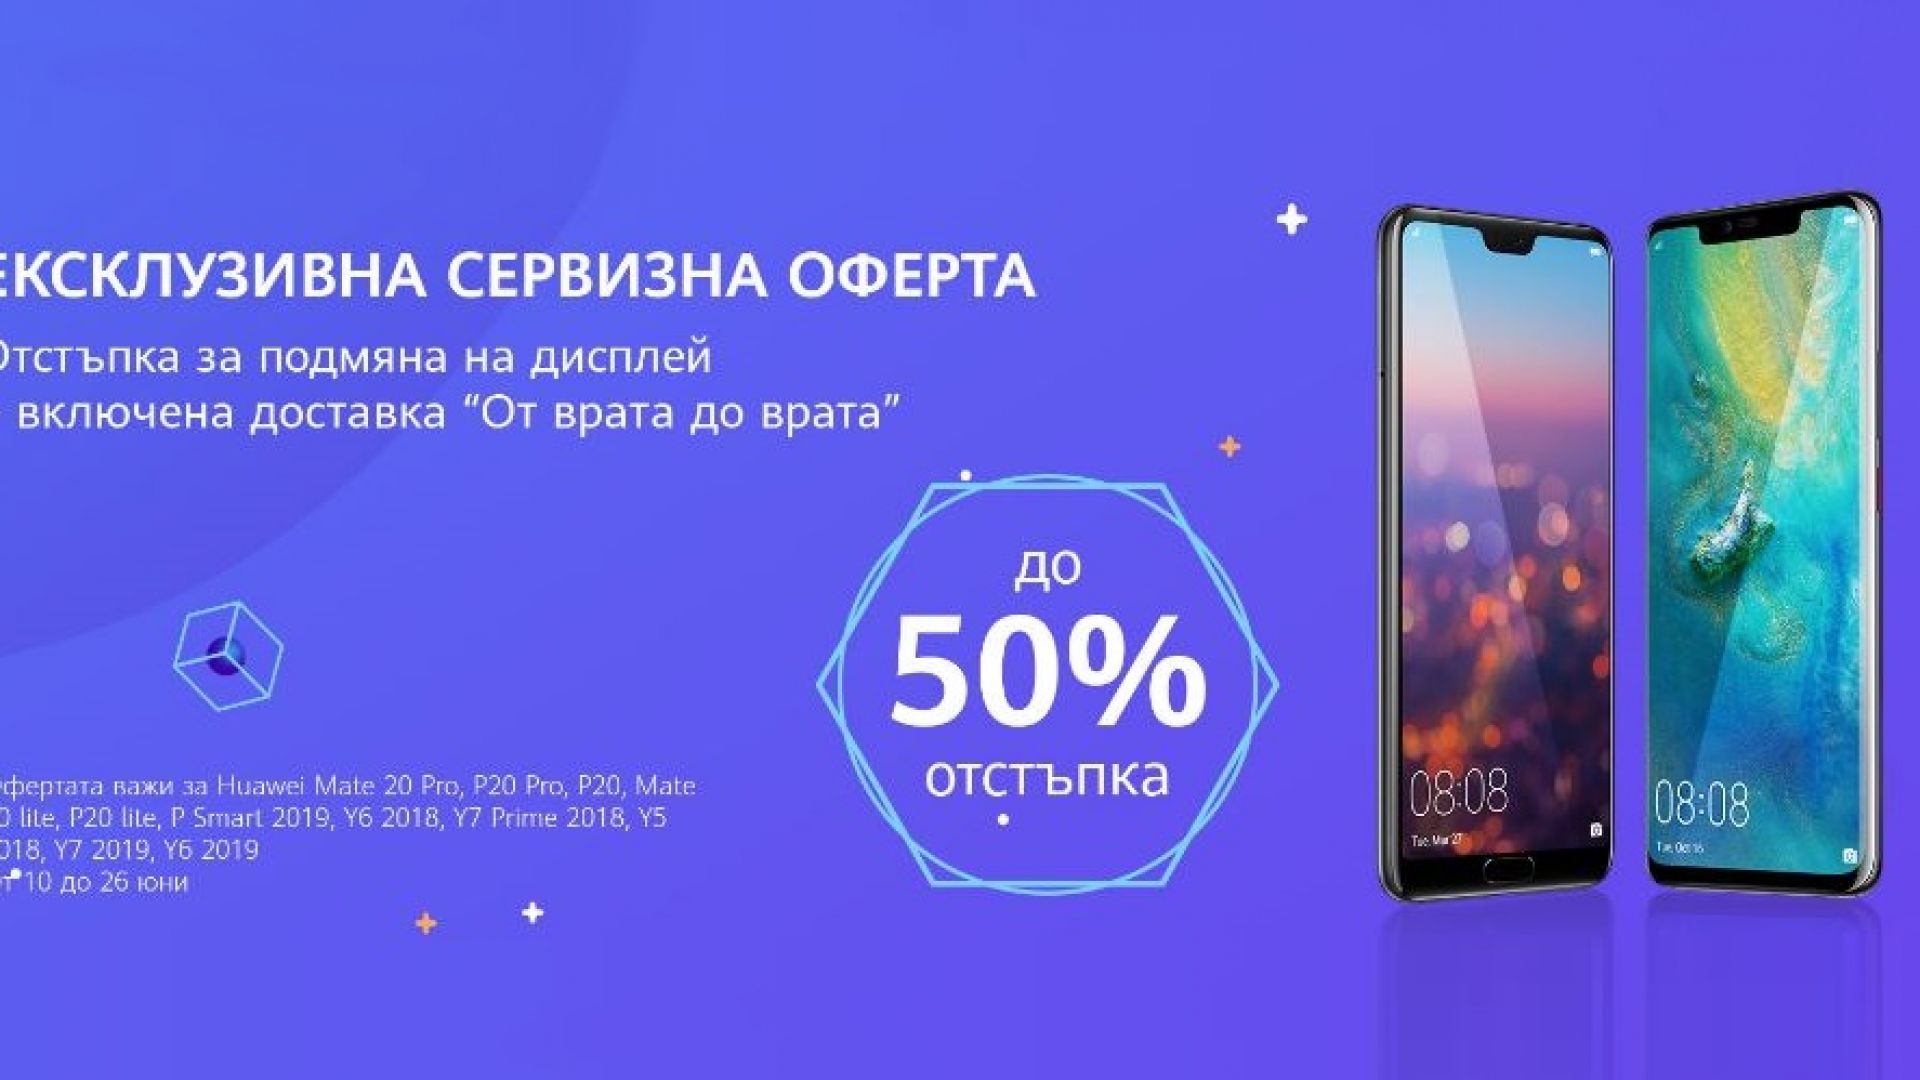 До 50% отстъпка за смяна на дисплей в нова сервизна кампания на Huawei в България